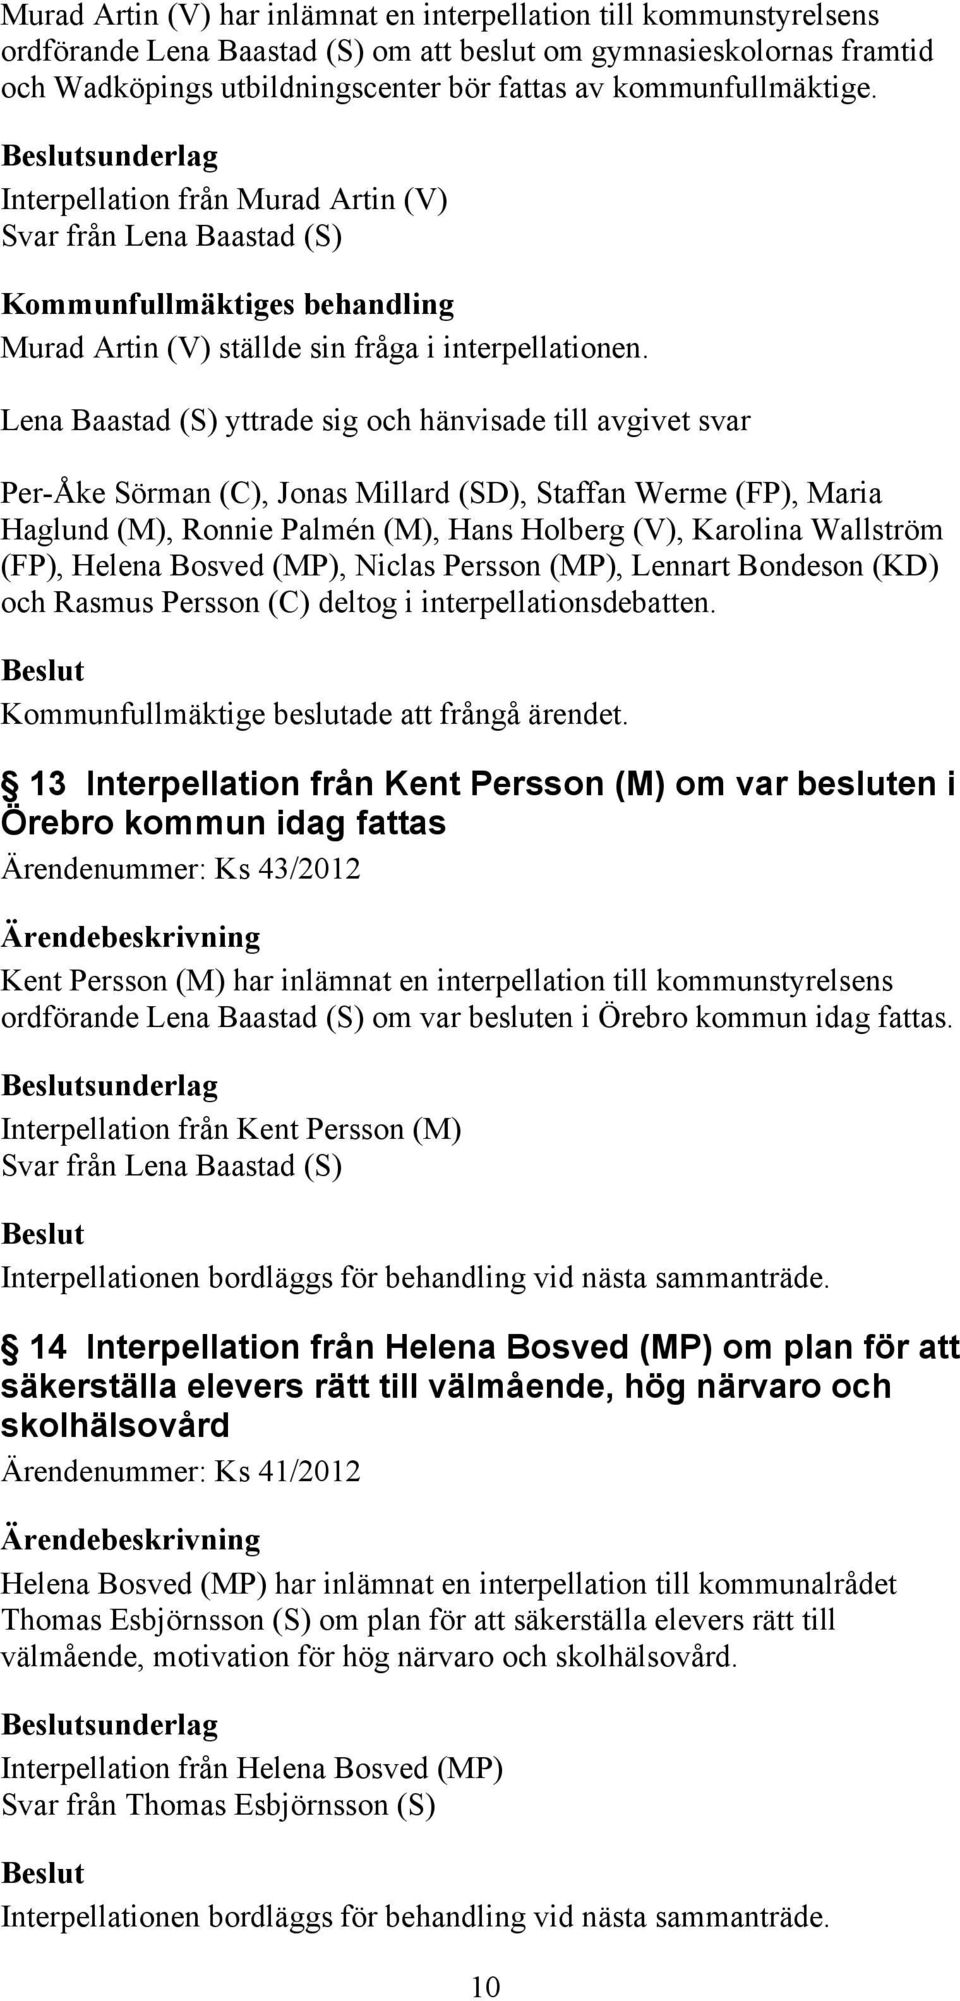 Lena Baastad (S) yttrade sig och hänvisade till avgivet svar Per-Åke Sörman (C), Jonas Millard (SD), Staffan Werme (FP), Maria Haglund (M), Ronnie Palmén (M), Hans Holberg (V), Karolina Wallström